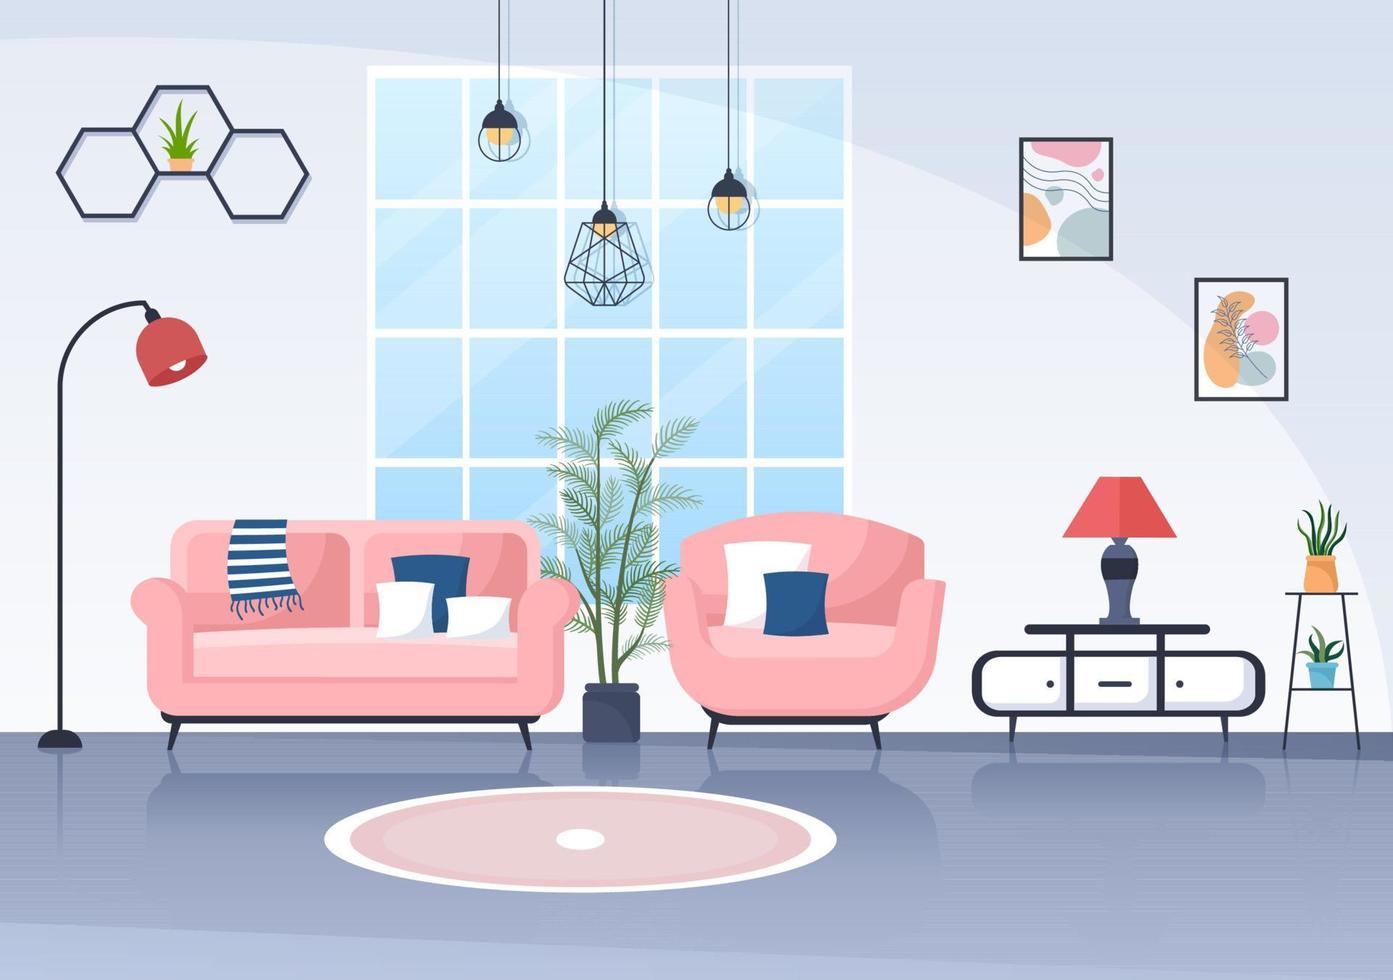 flache designillustration der wohnmöbel, damit das wohnzimmer bequem ist wie ein sofa, ein schreibtisch, ein schrank, lichter, pflanzen und wandbehänge vektor